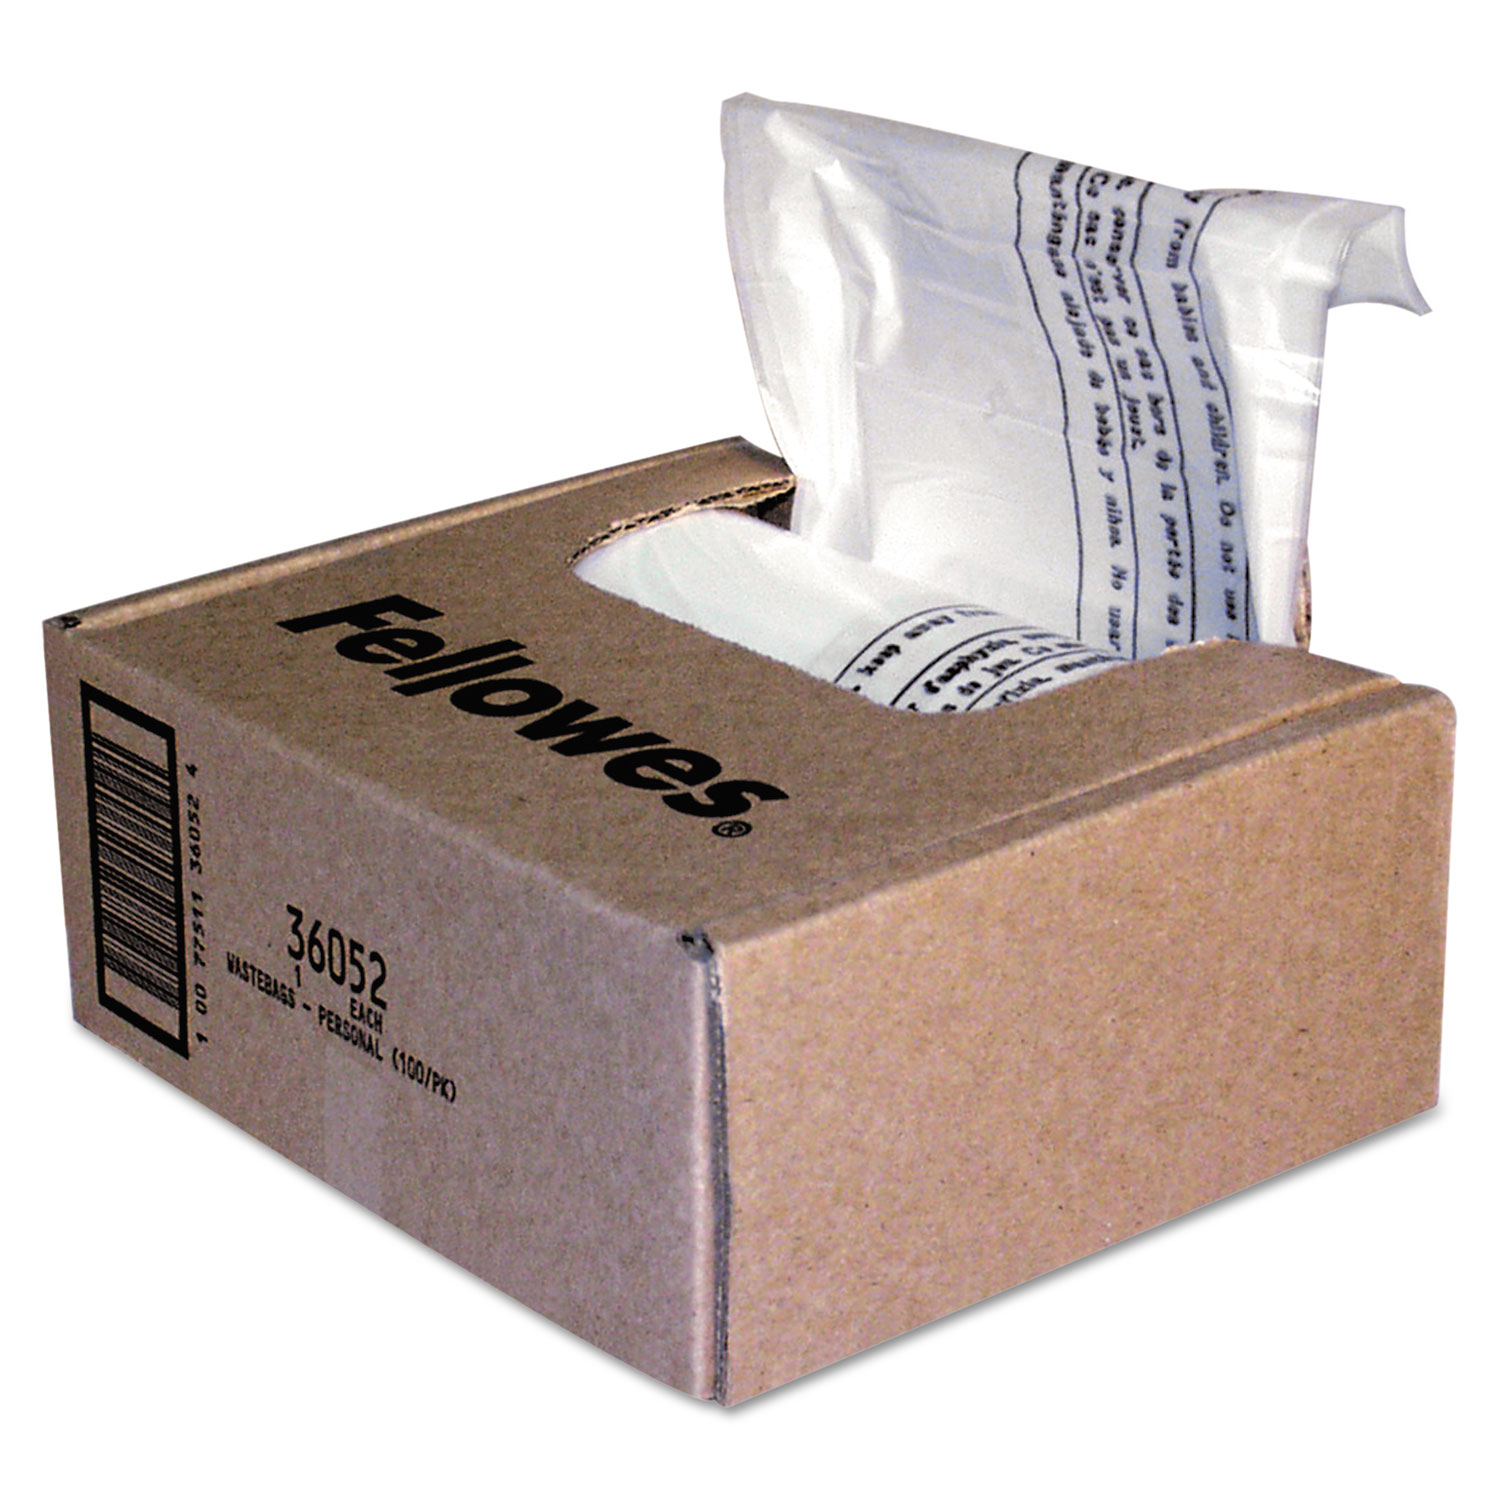  Fellowes 36052 Shredder Waste Bags, 6-7 gal Capacity, 100/Carton (FEL36052) 